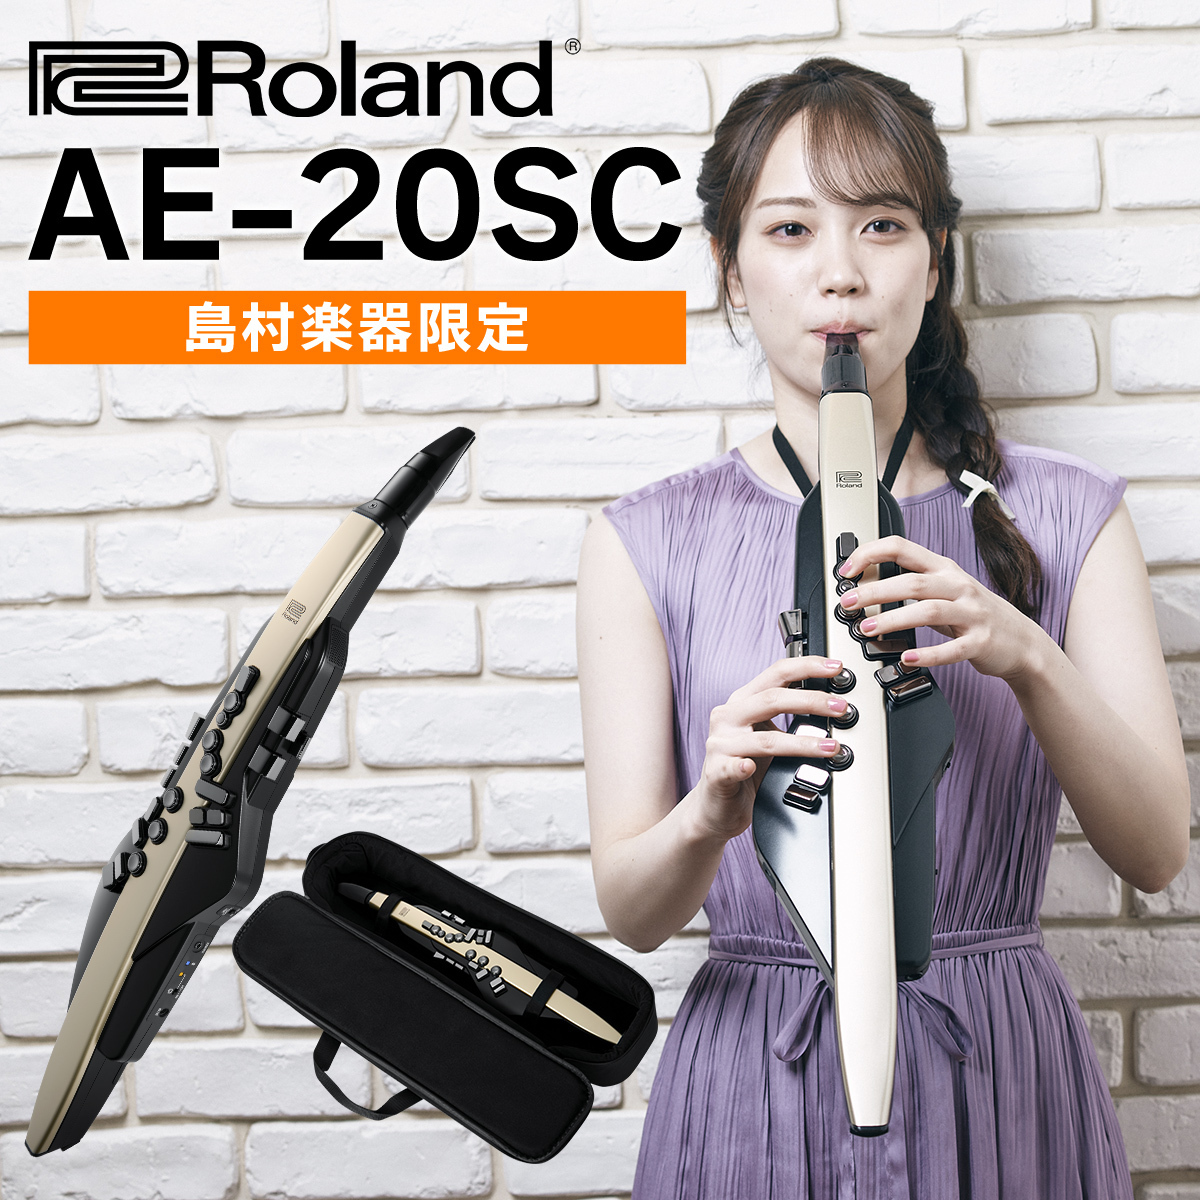 楽器を楽しみたいすべての方へ管楽器の魅力を凝縮した、Aerophone(エアロフォン)スタンダード”AE-20SC”は「Roland×島村楽器コラボレーションモデル」として”ボディカラー”と”搭載サウンド”に独自要素を追加。 本格的なサウンド、管楽器ならではの吹奏感に加え、使いやすさ、充実したコンテ […]